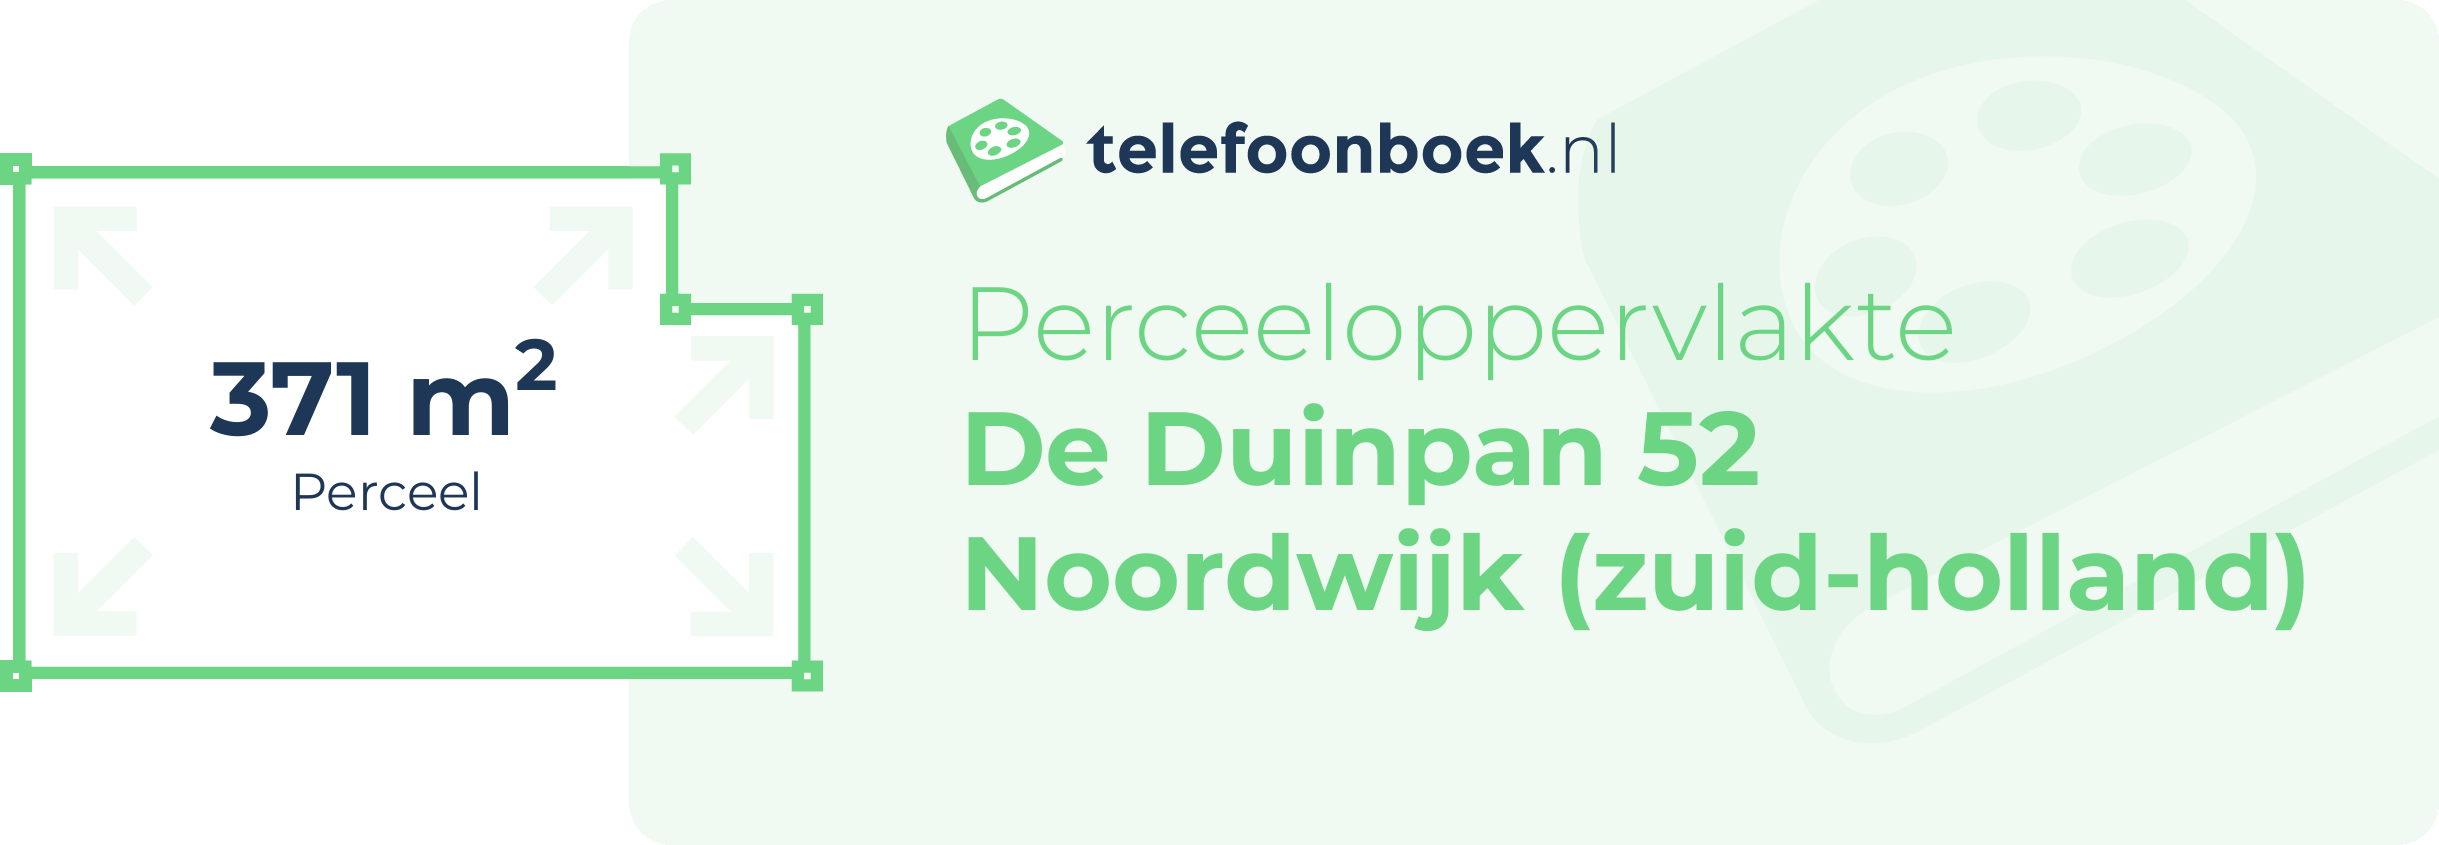 Perceeloppervlakte De Duinpan 52 Noordwijk (Zuid-Holland)